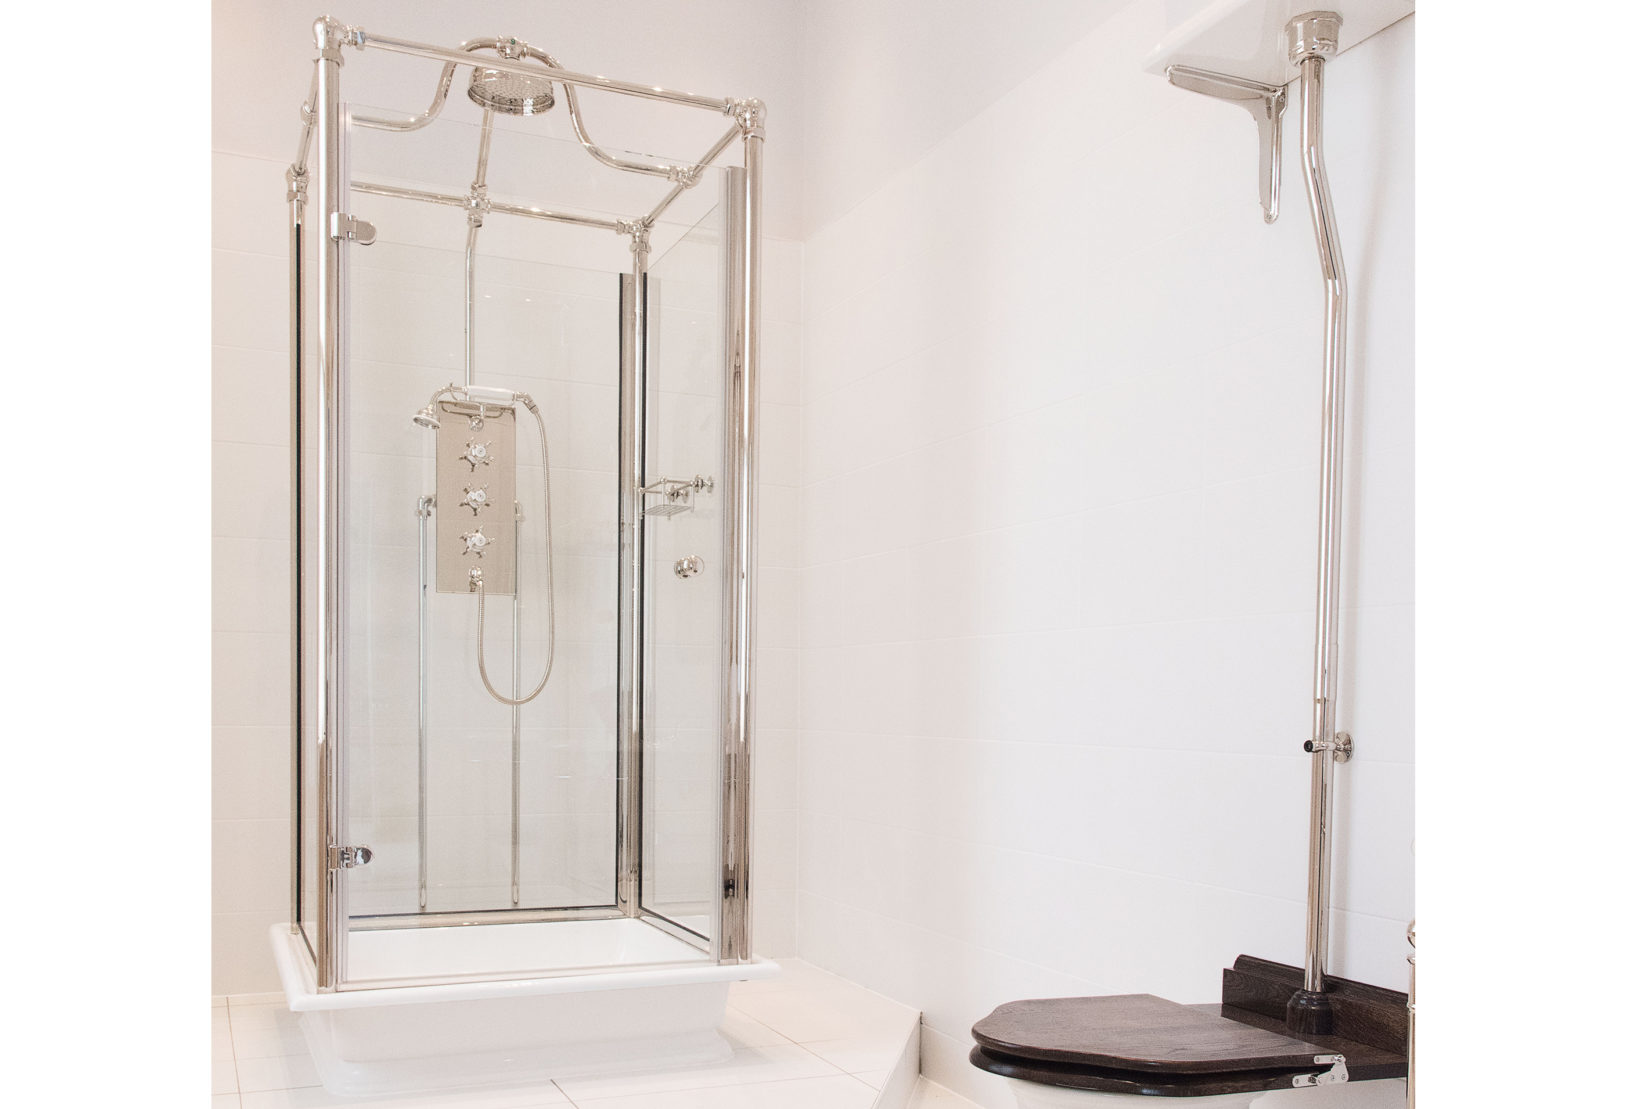 The Grand Floor Standing Shower Pipe - Drummonds Bathrooms